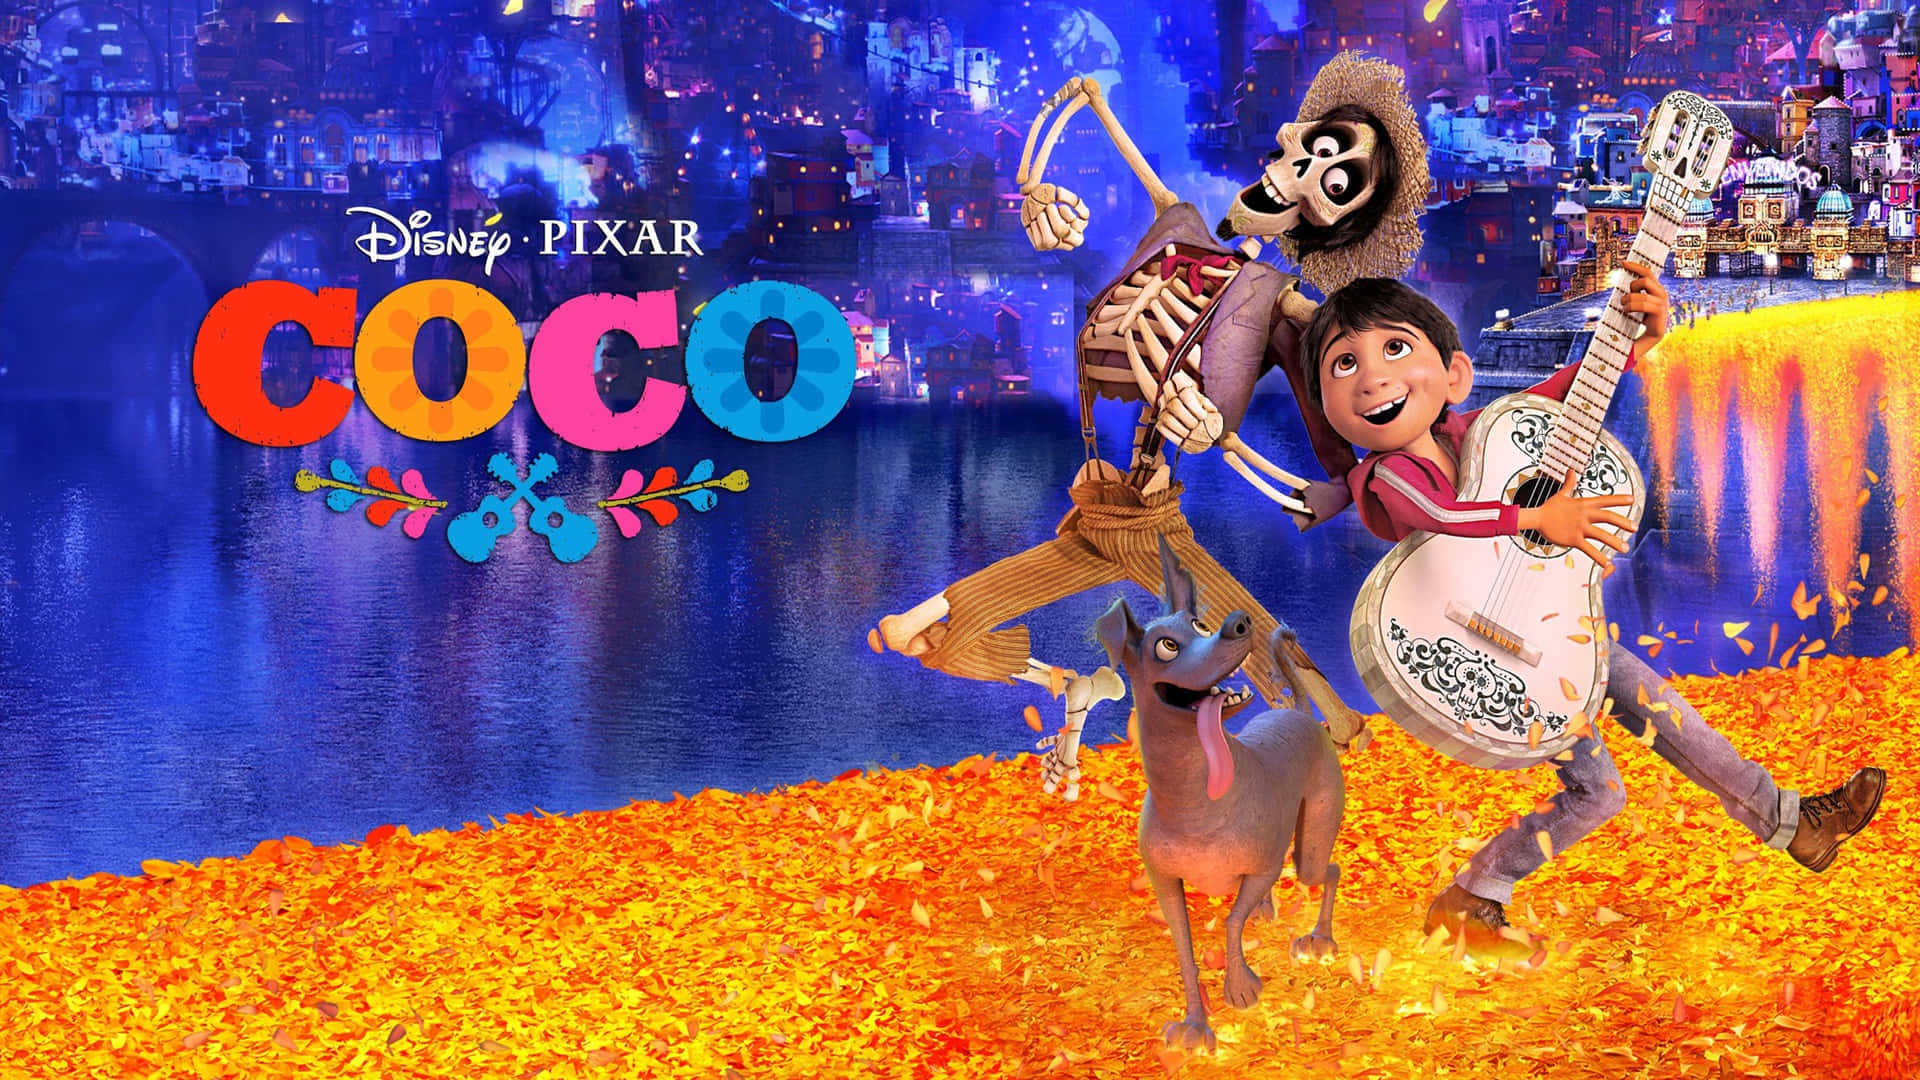 Celebrea Cultura Mexicana E O Espírito De Coco Com Este Filme Atemporal Da Disney. Papel de Parede